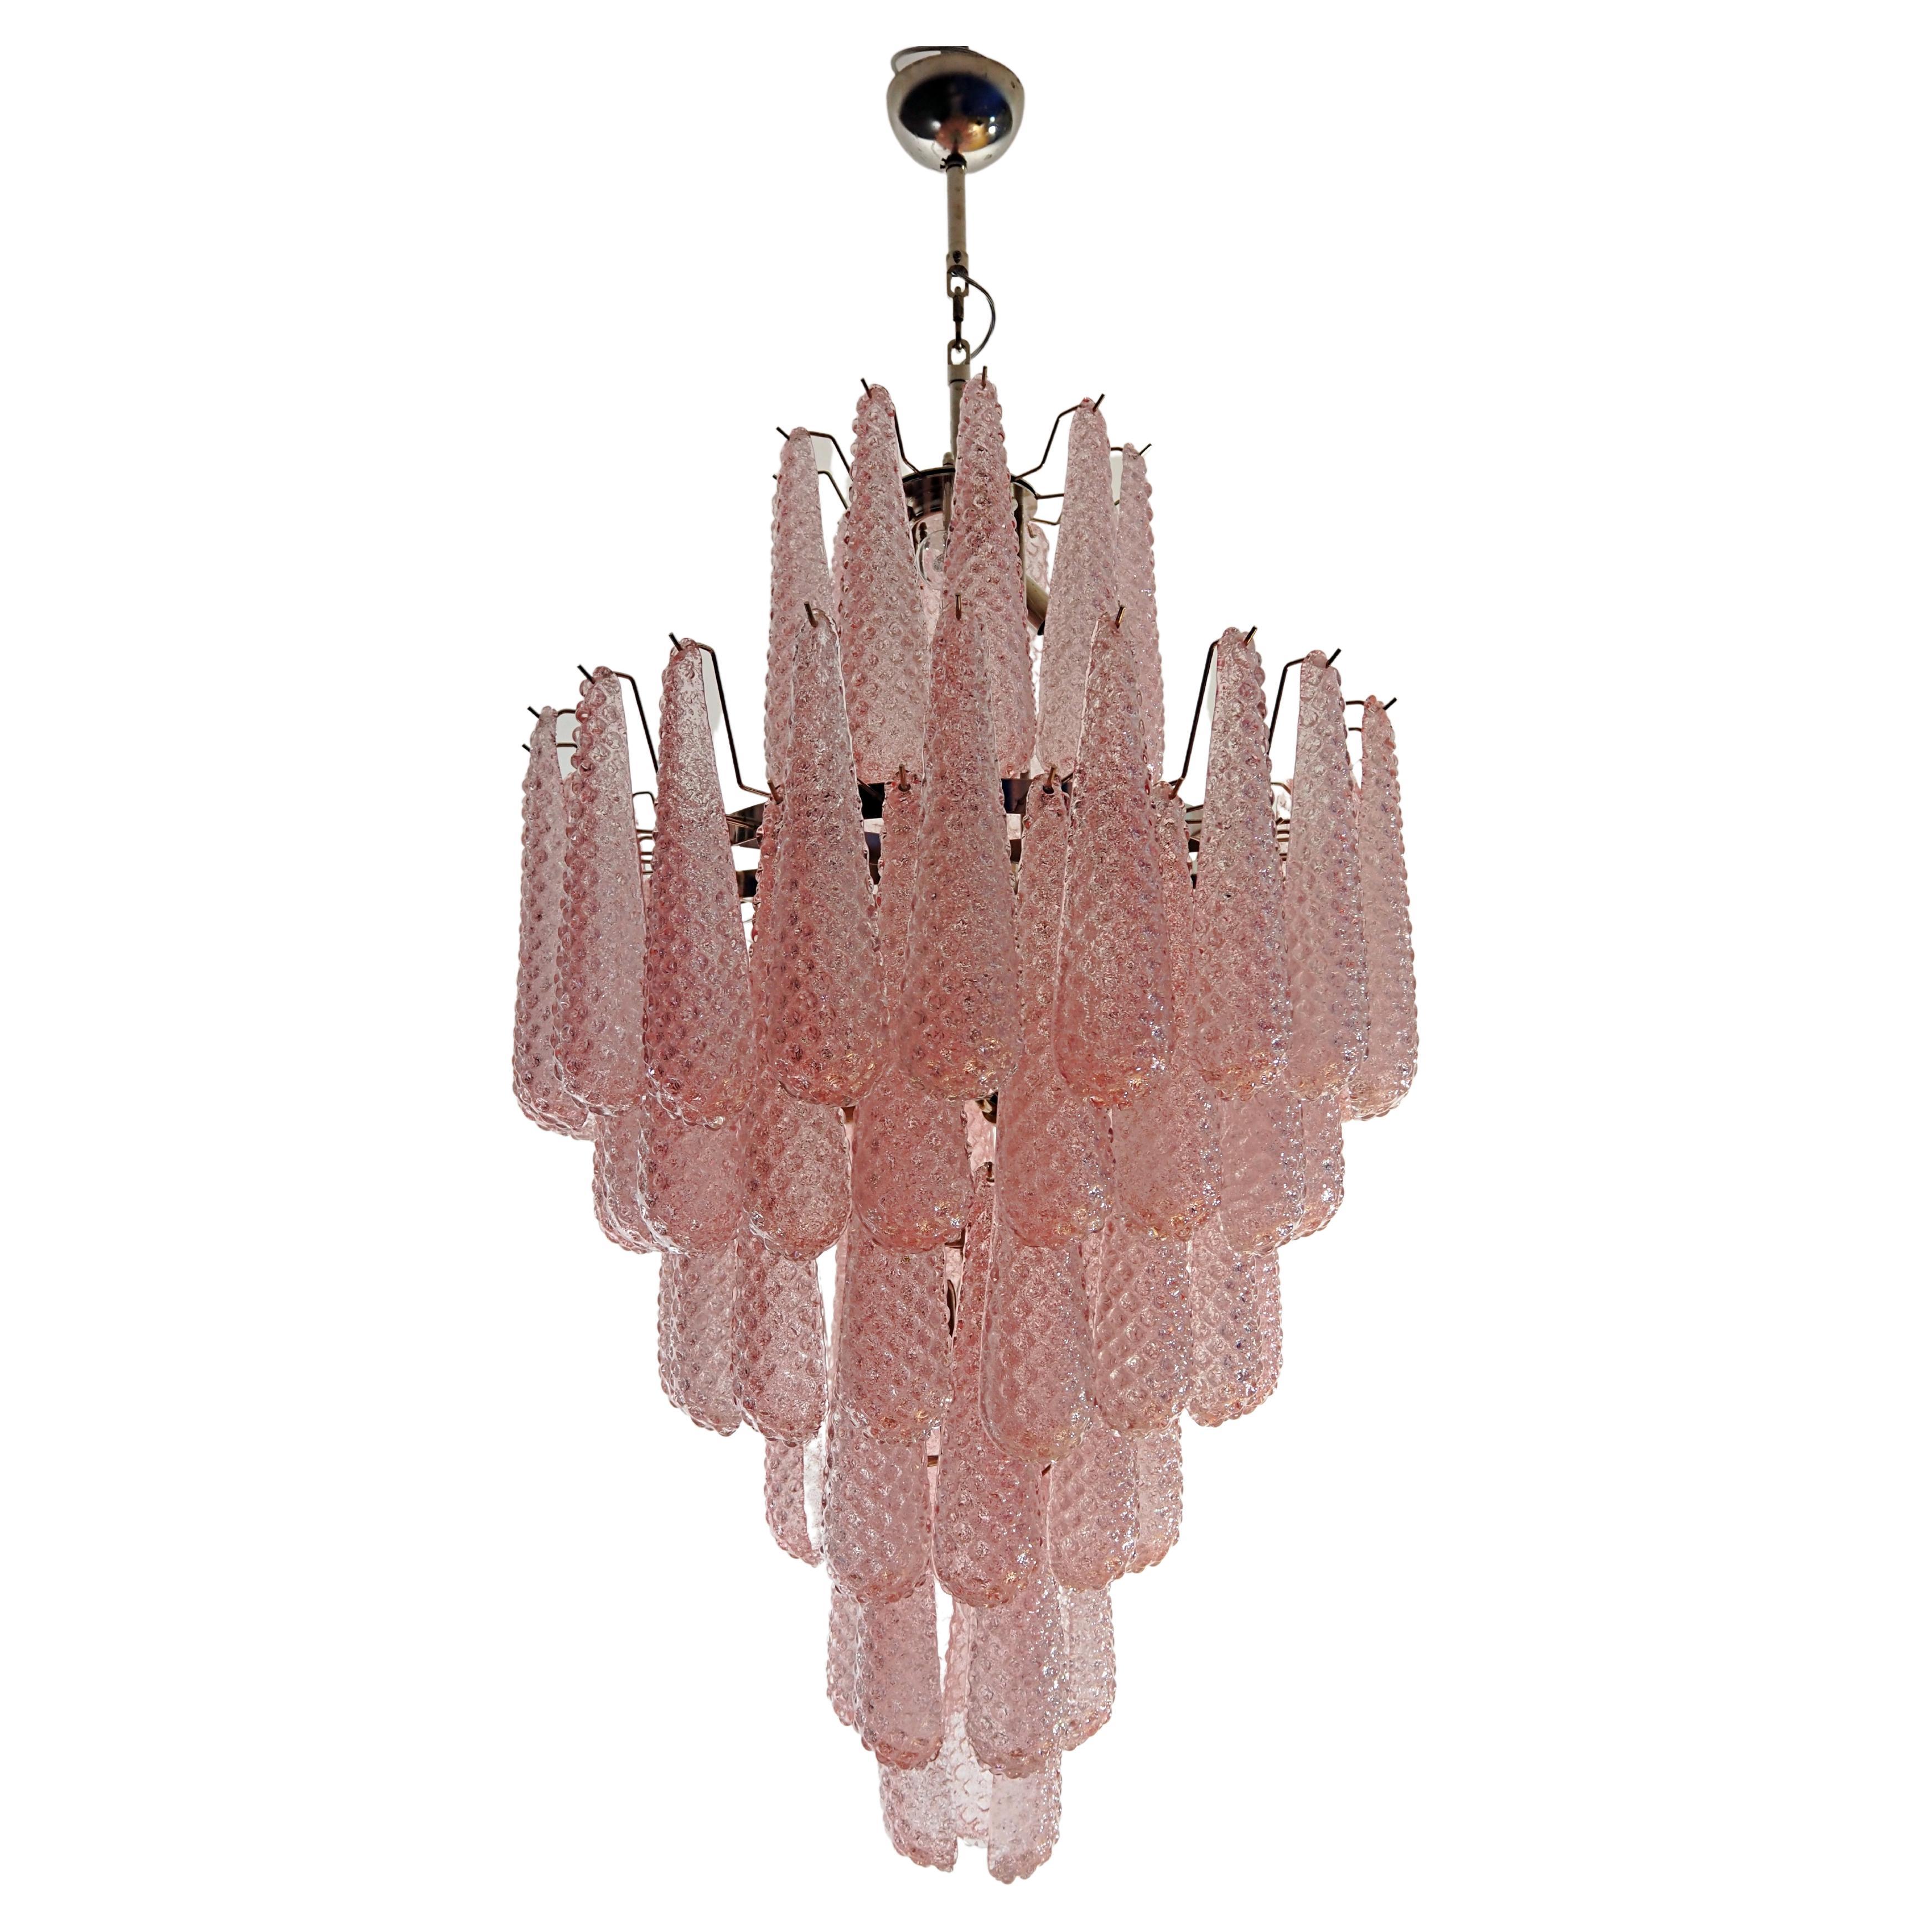 Huge Italian vintage Murano glass chandelier - 85 glass PINK petals drop